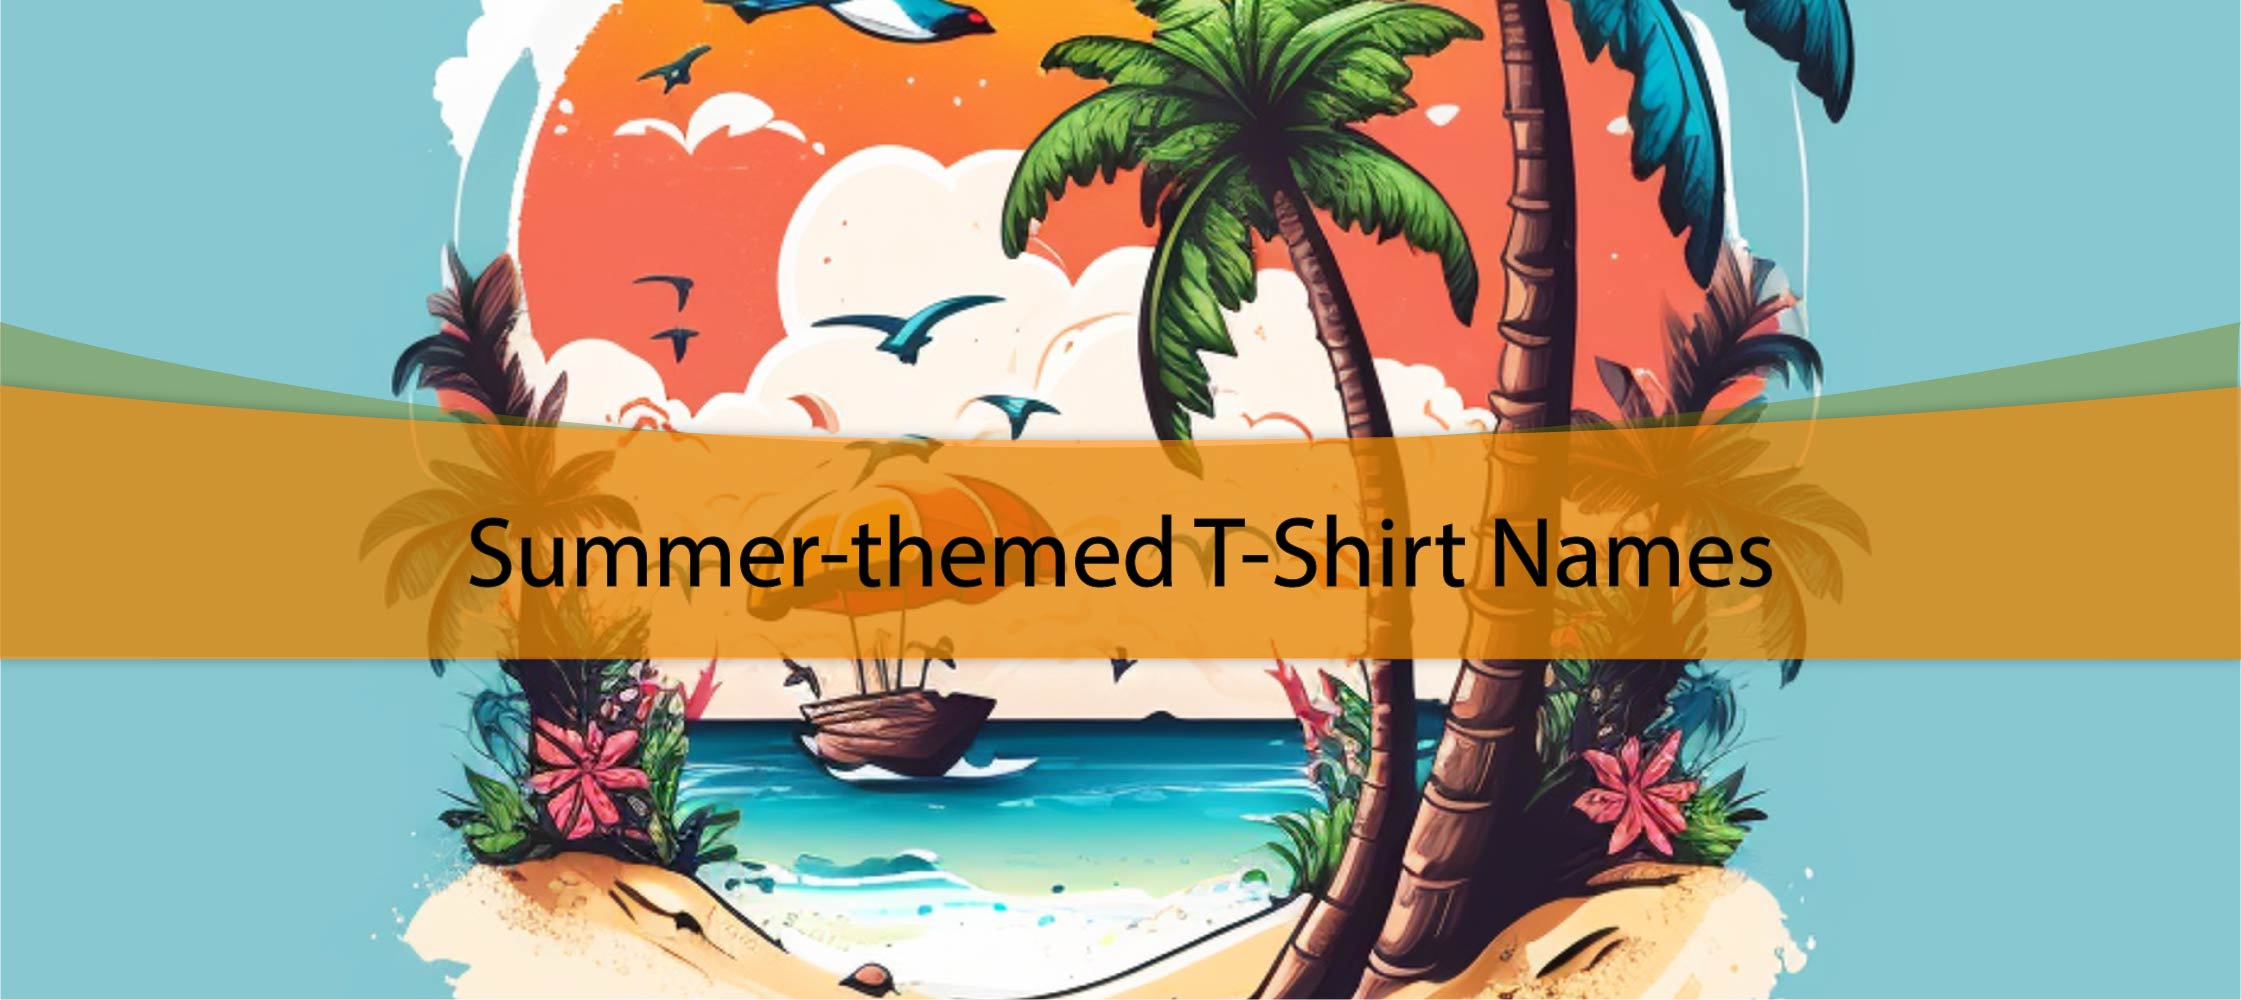 Summer-themed T-Shirt Names